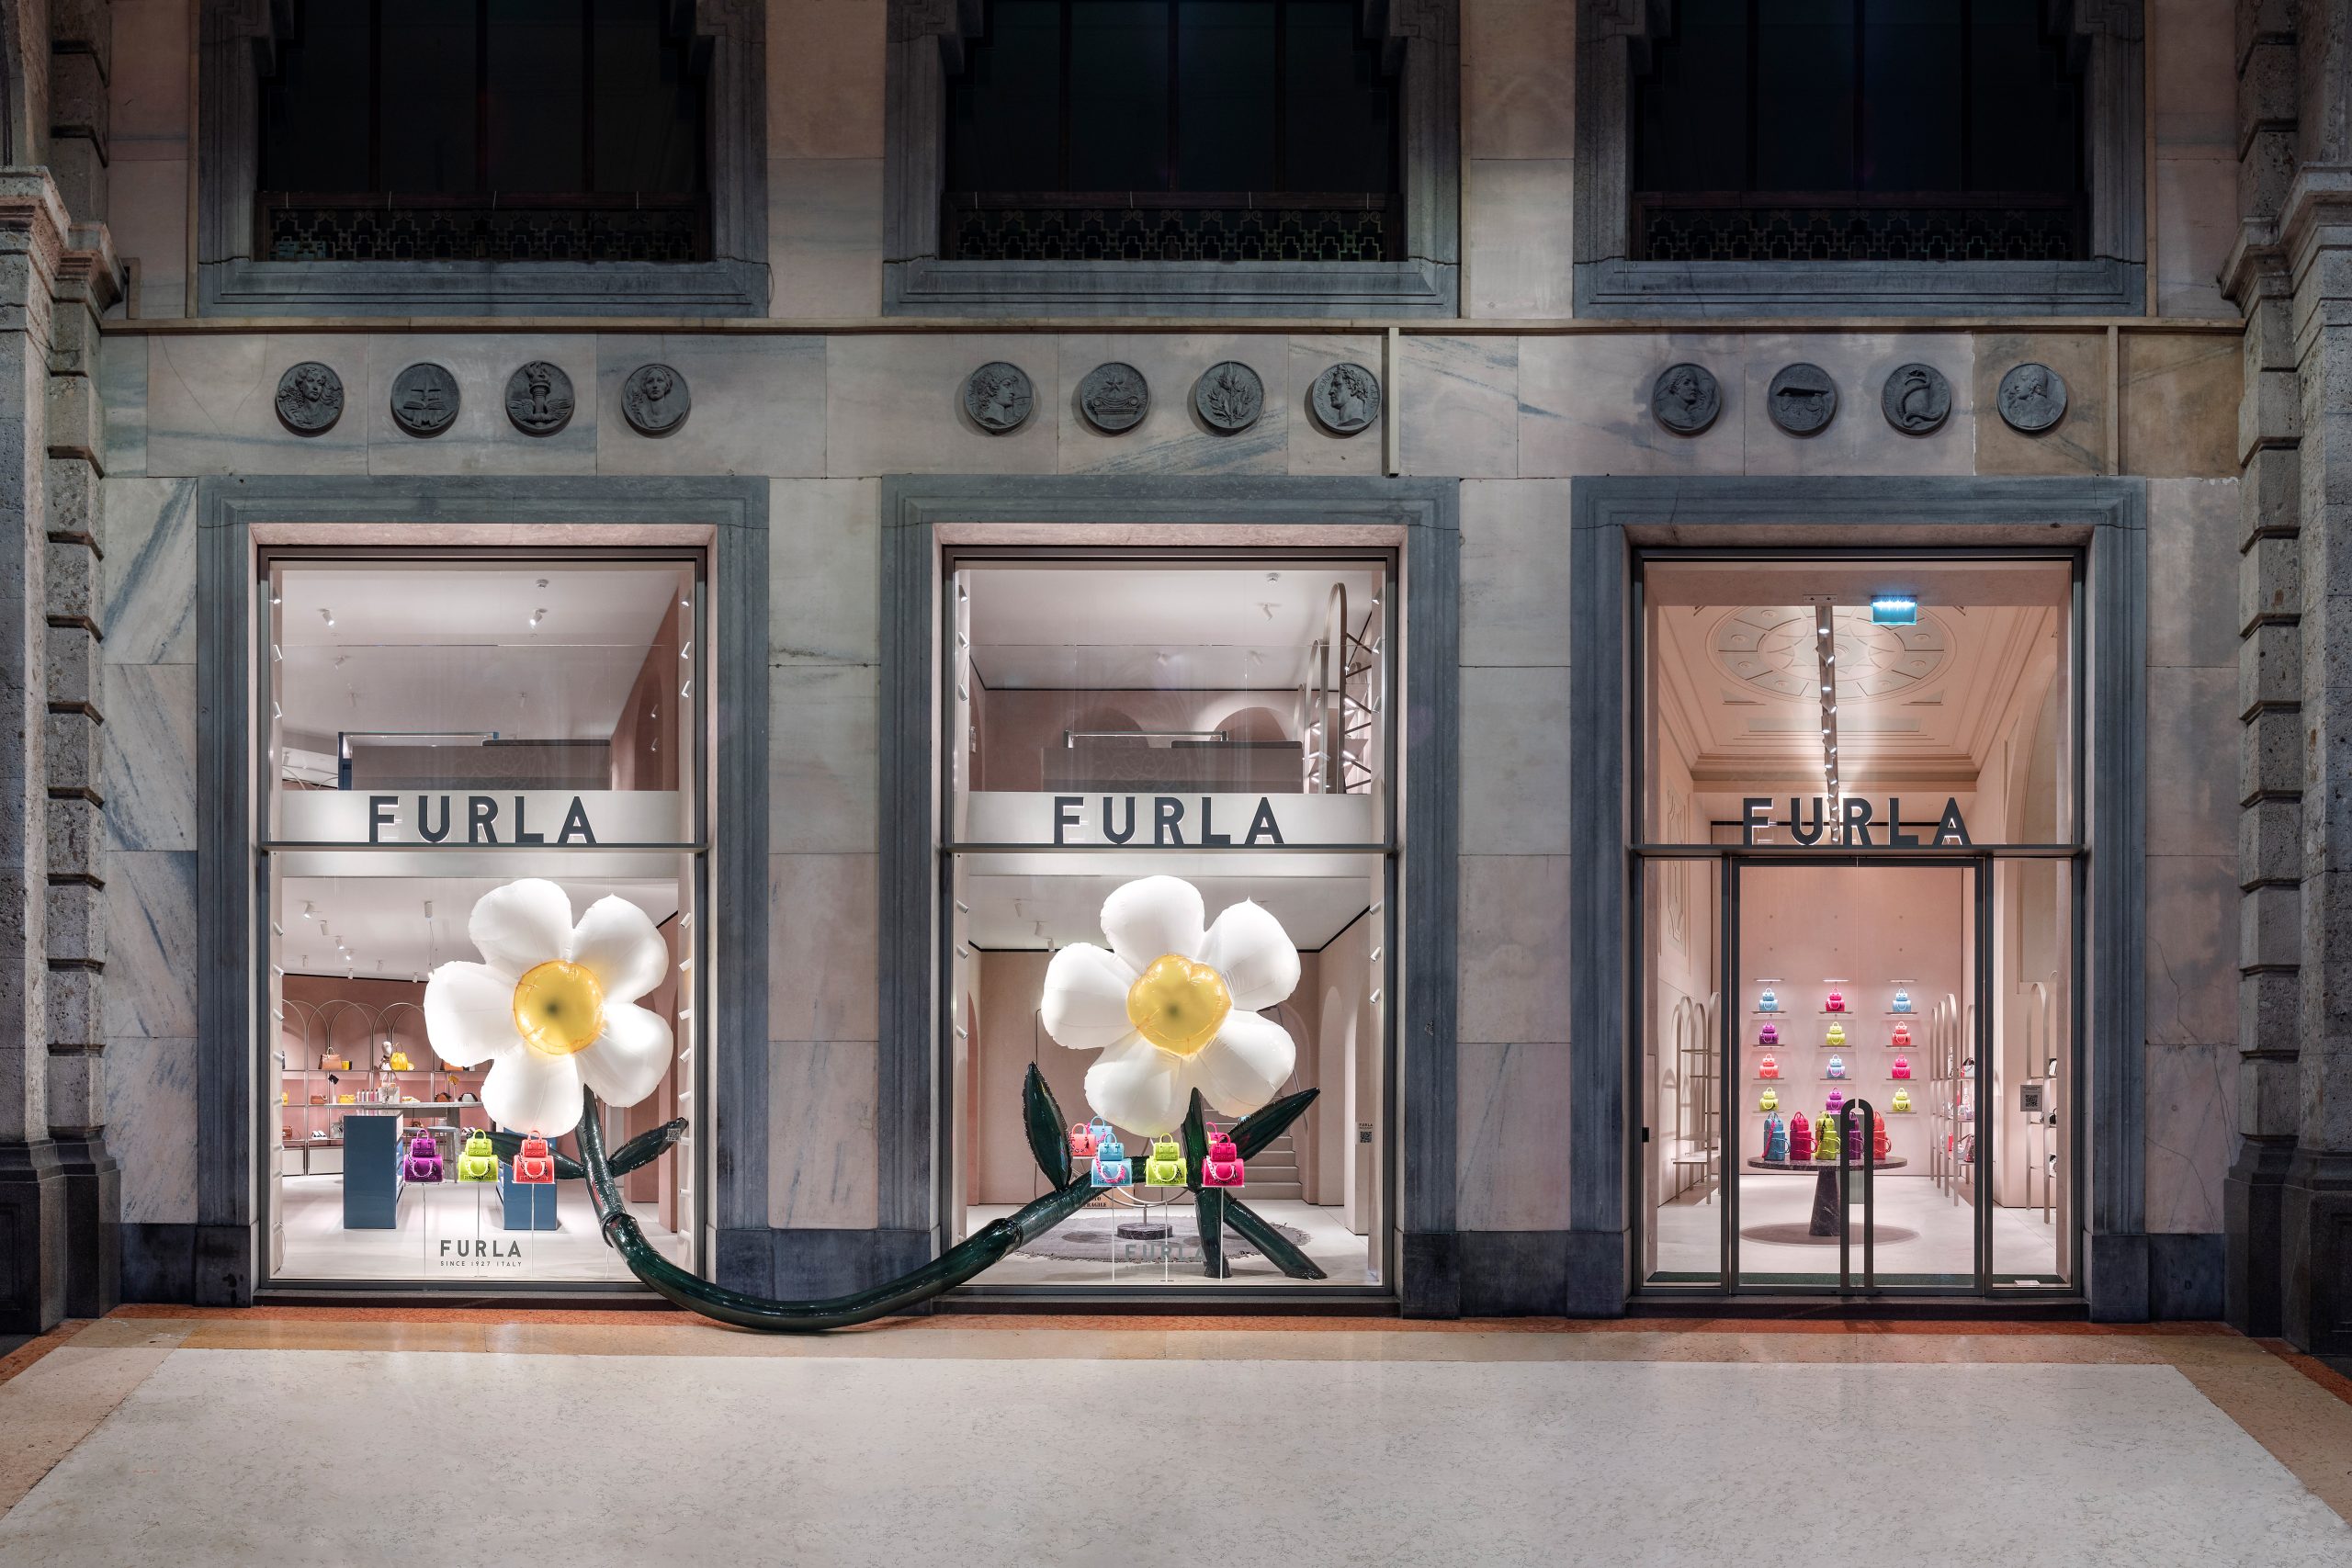 Furla Milan's flagship store facade at Piazza del Duomo